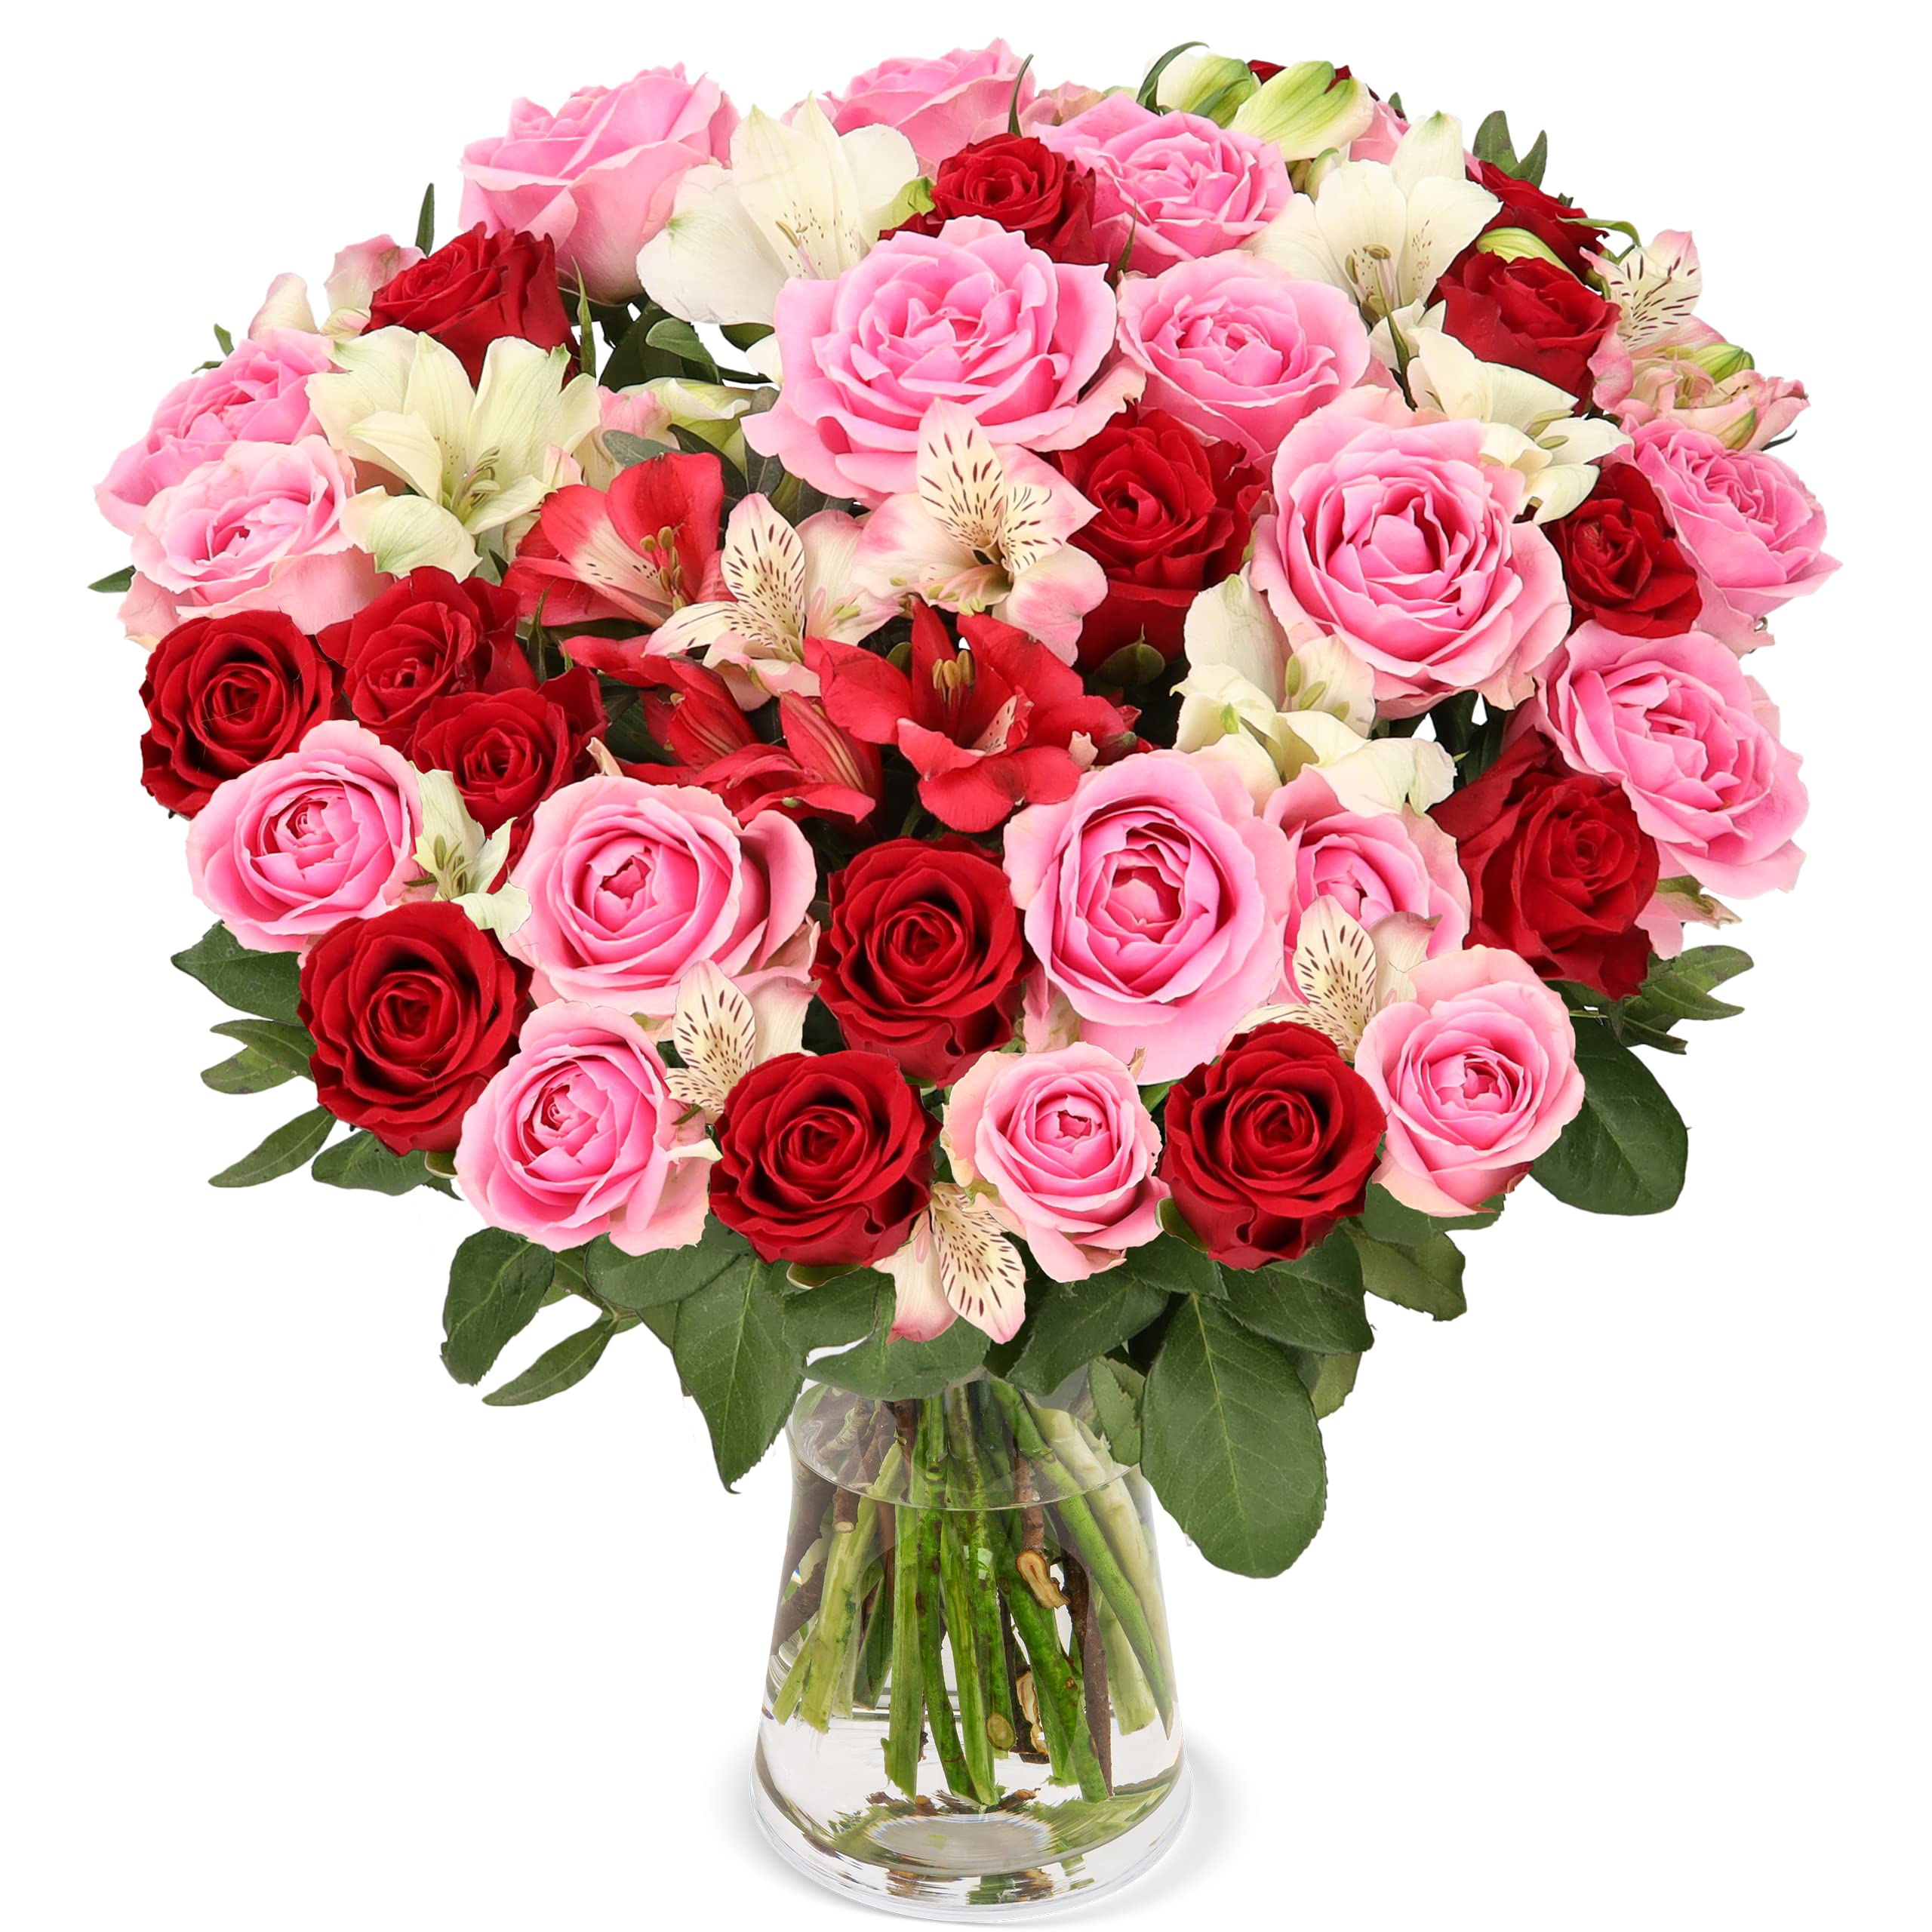 Blumenstrauß Rosenwunder, Rosen und Inkalilien, Rot und Rosa,  7-Tage-Frischegarantie, Qualität vom Floristen, handgebunden, perfekte  Geschenkidee ...